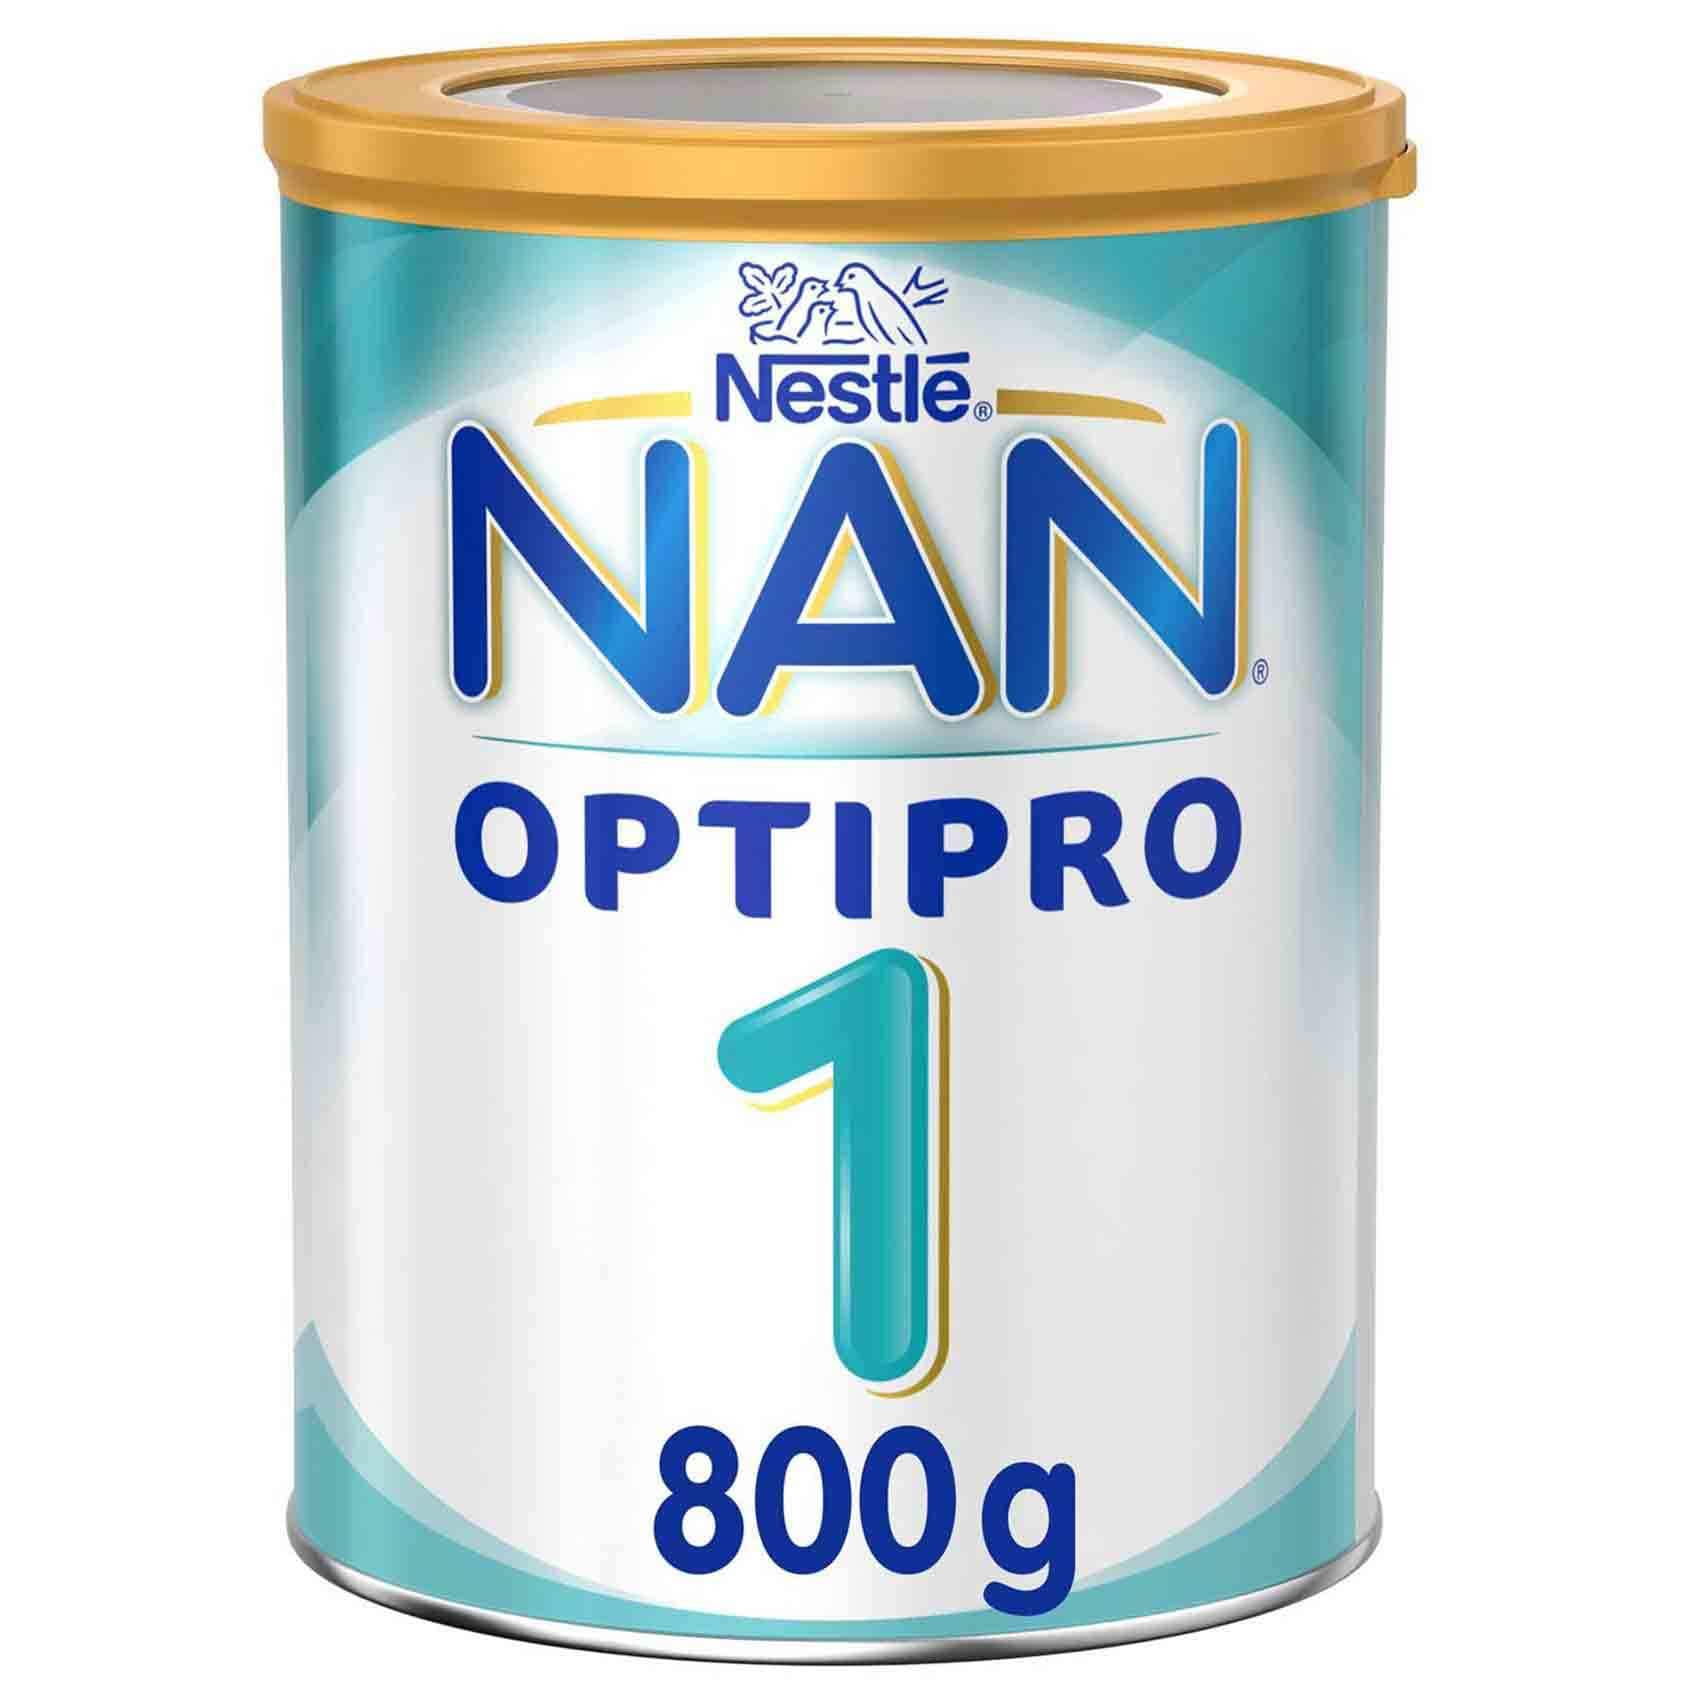 nan milk